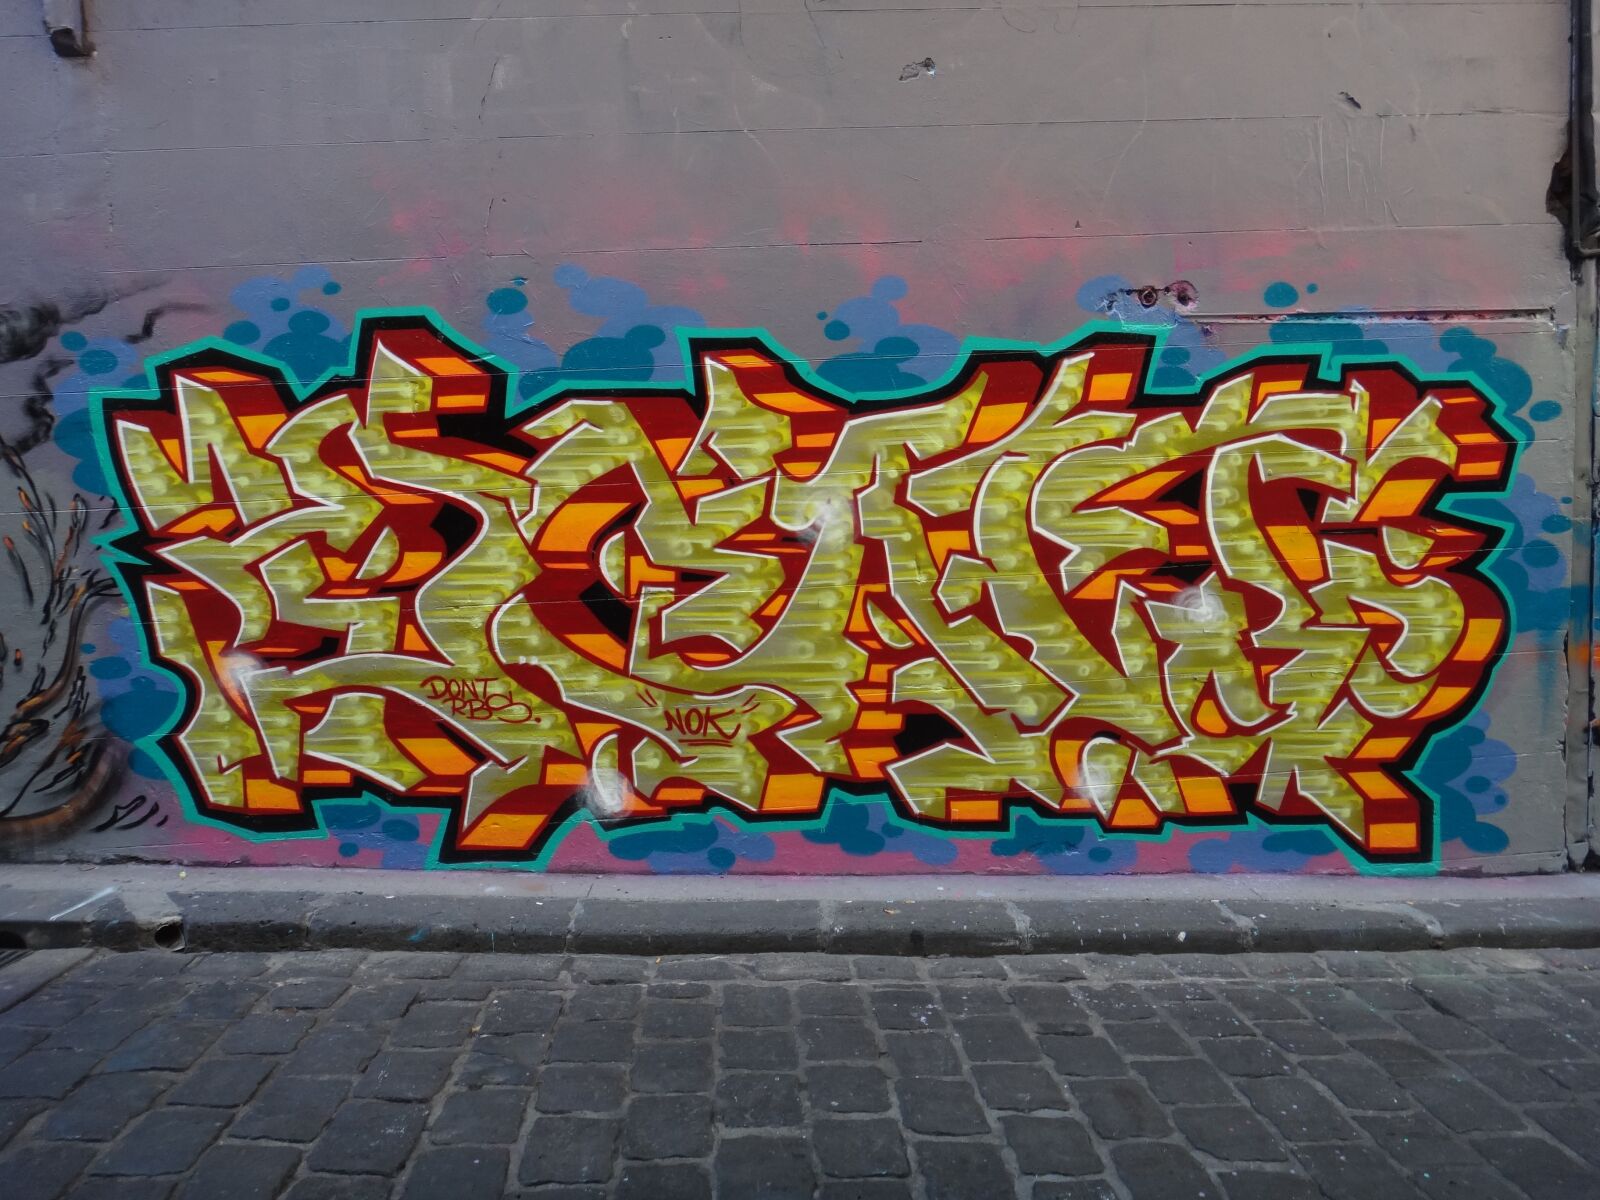 Sony DSC-TX20 sample photo. Graffiti, hosierlane, spray photography